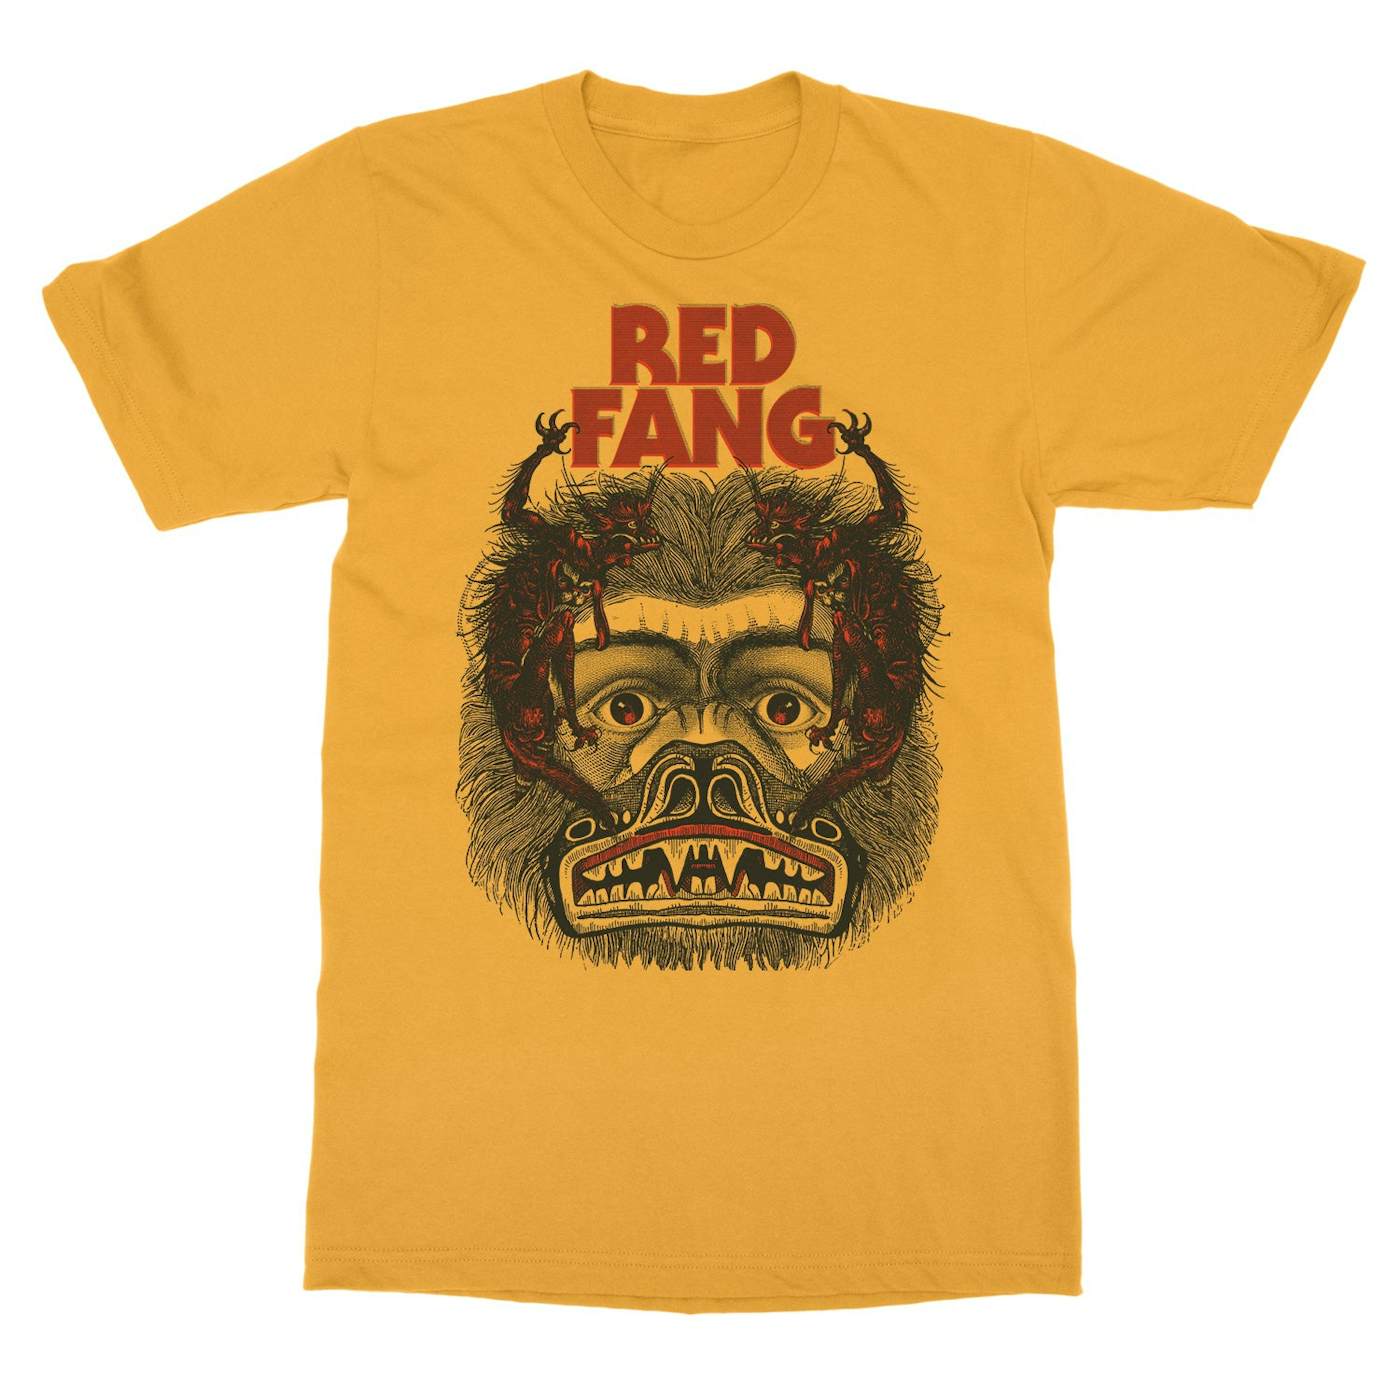 Red Fang "Xavi" T-Shirt